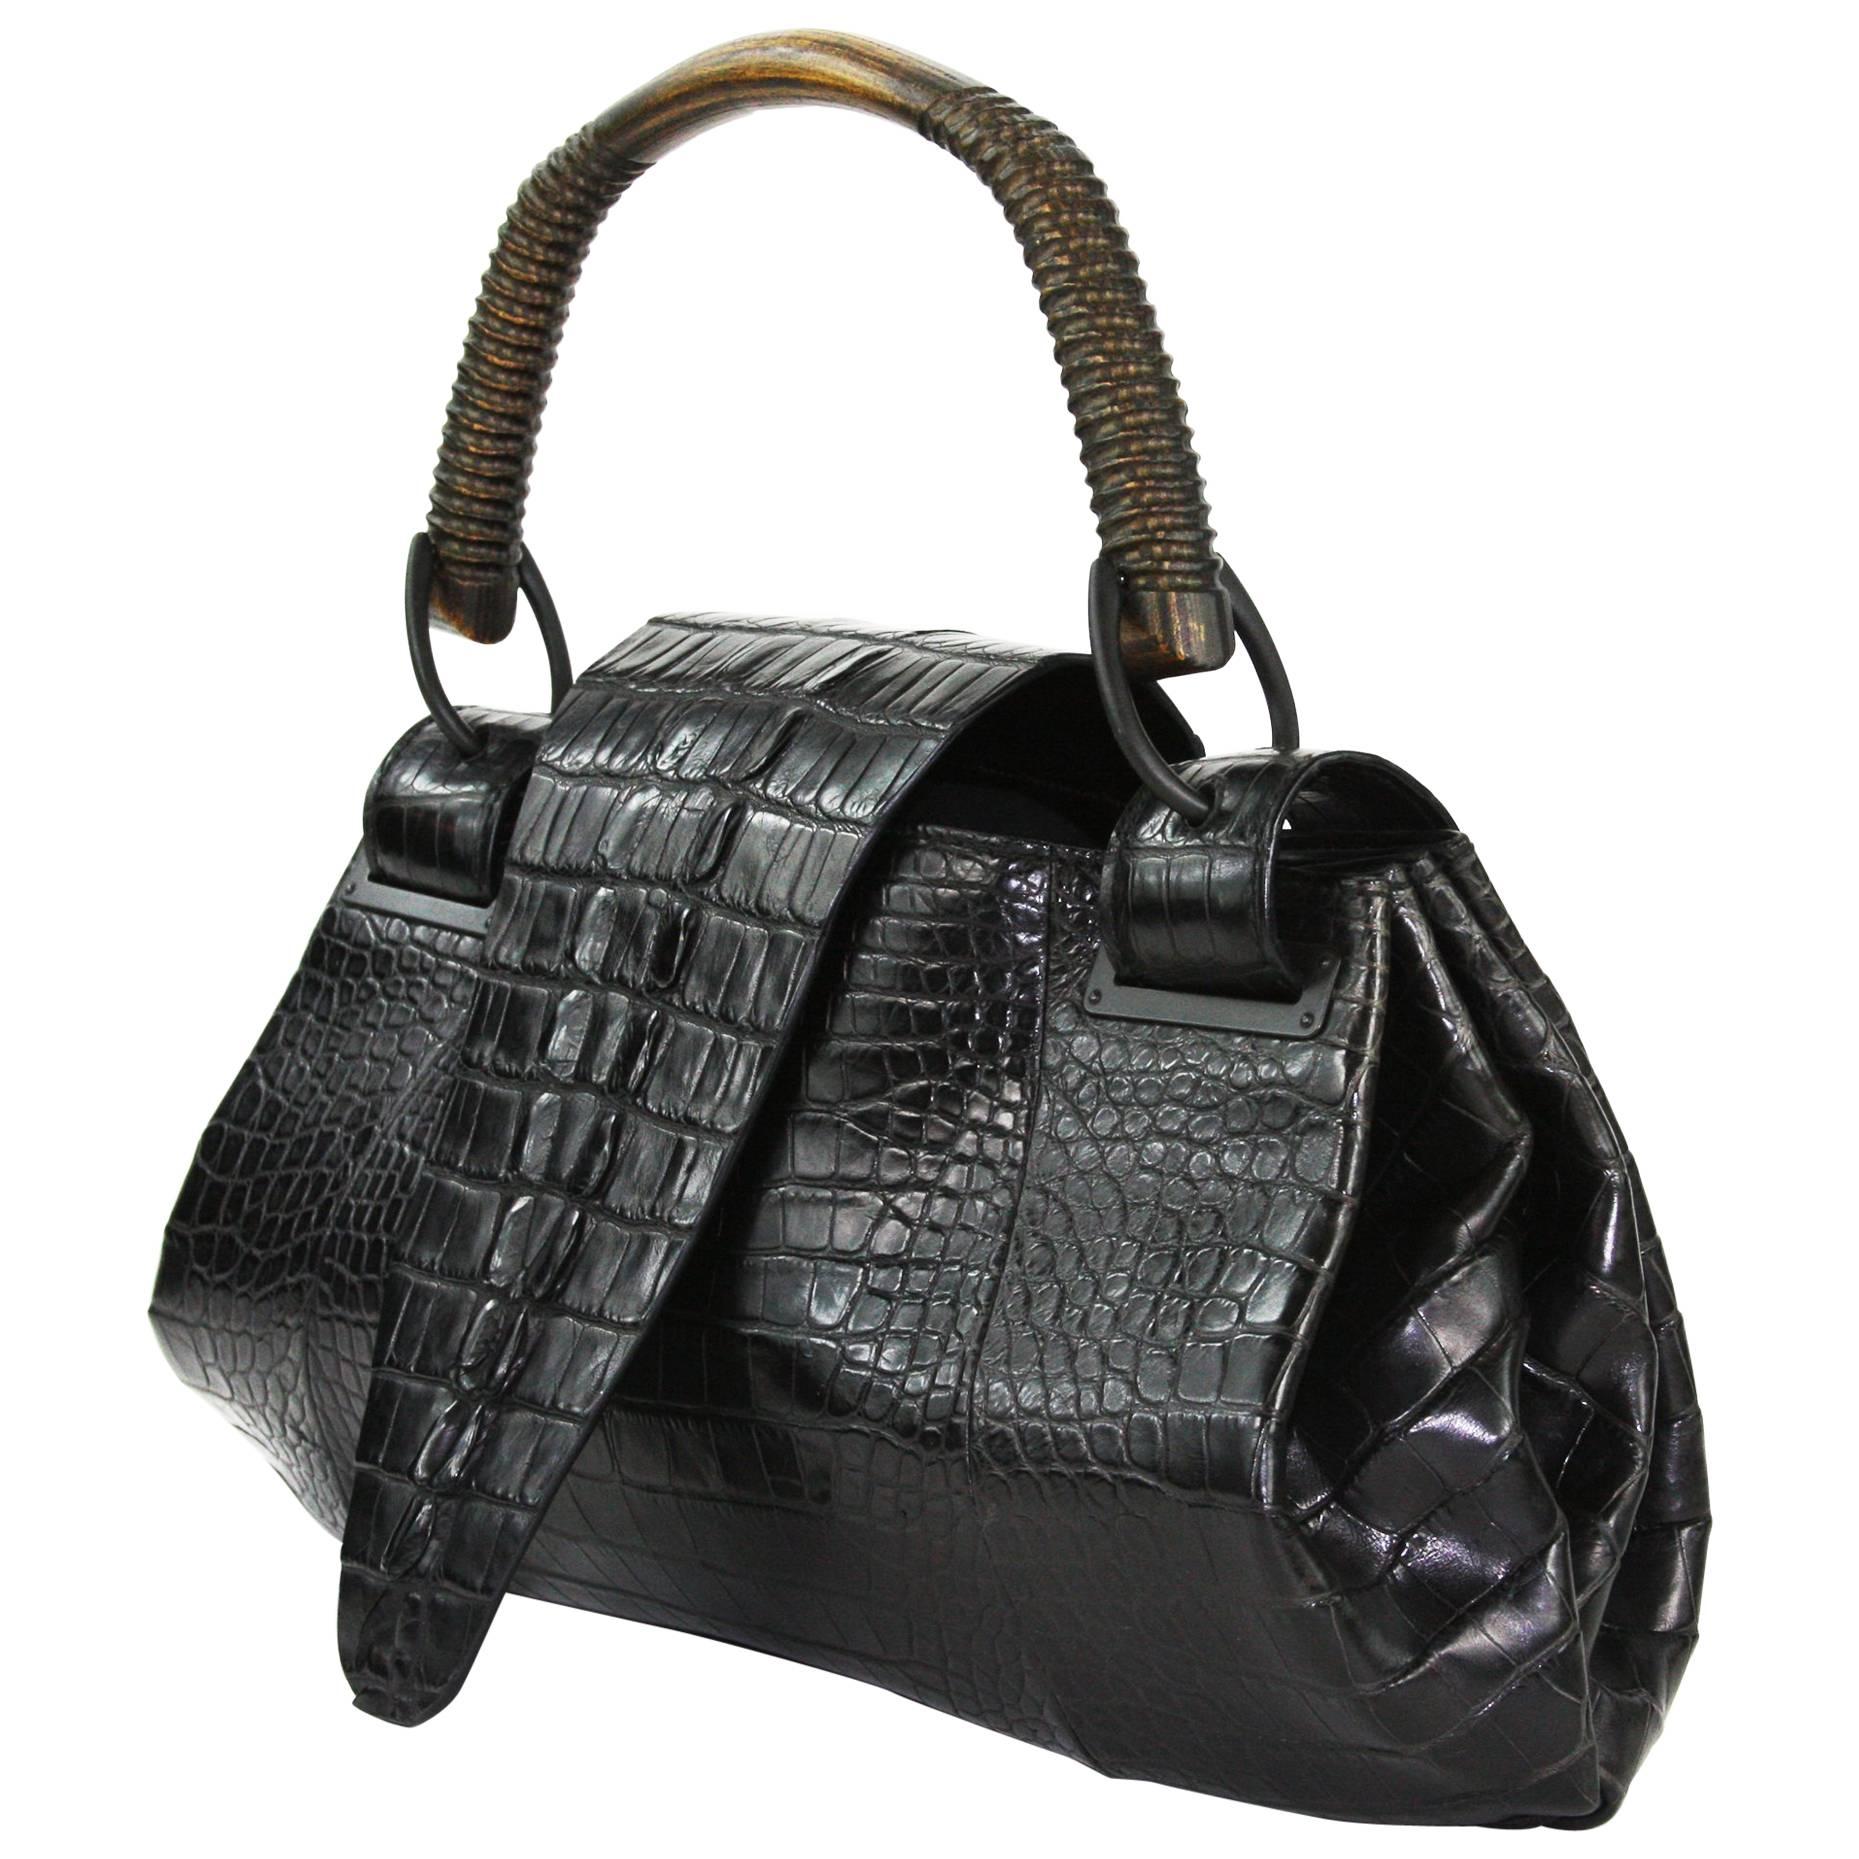 TOM FORD for GUCCI F/W 2002 AD Crocodile Black Handle Bag 